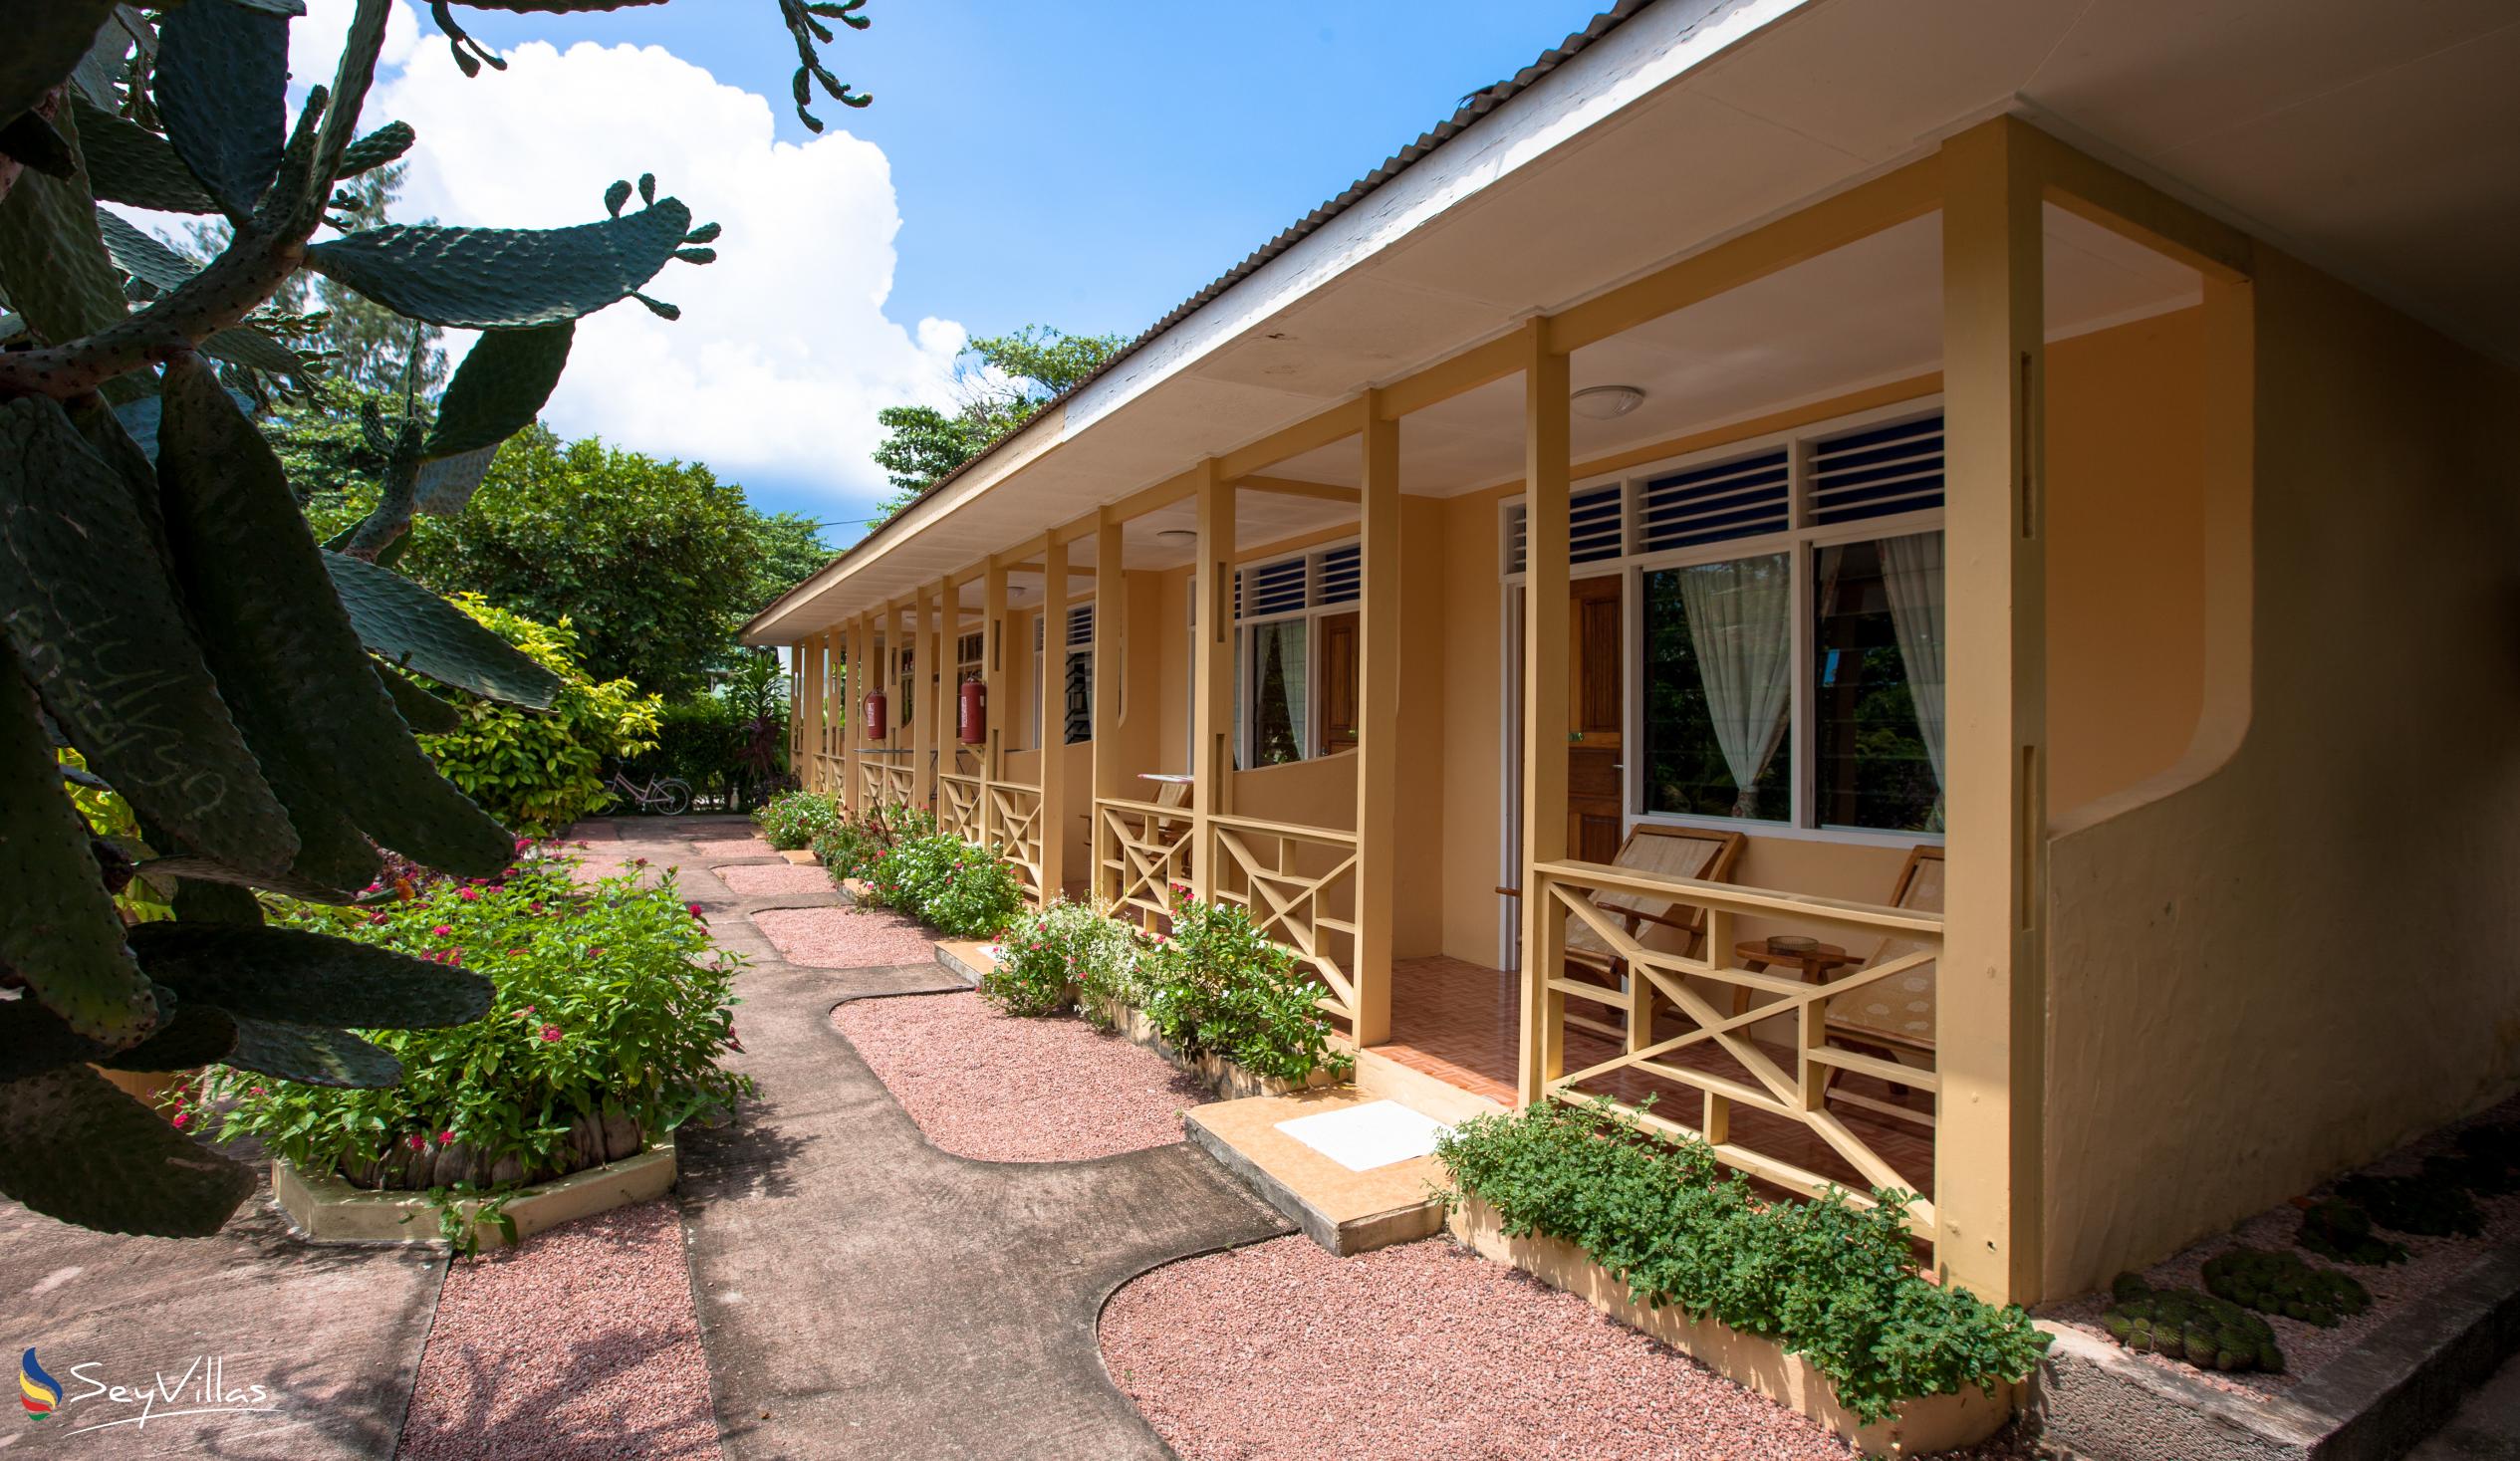 Foto 4: Chez Marston - Extérieur - La Digue (Seychelles)